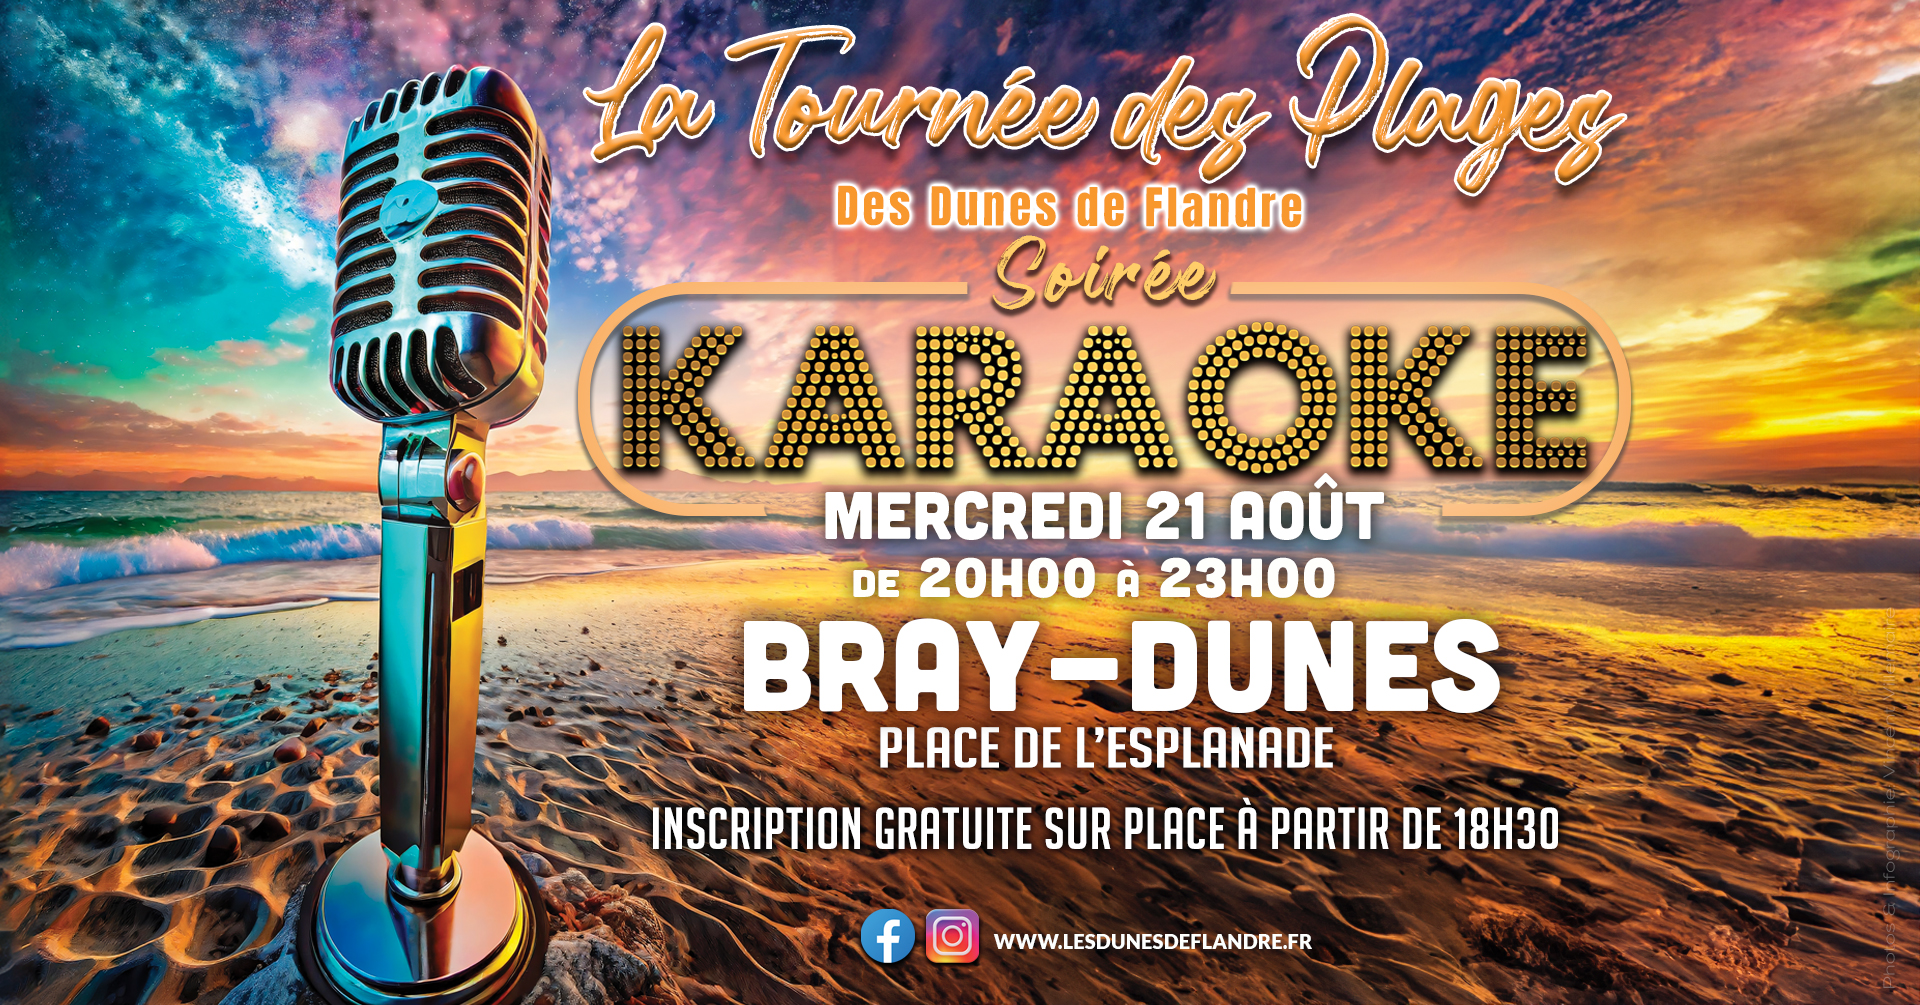 Le Karaoké de la tournée des plages des Dunes de Flandre s'installe place de l'Esplanade à Bray-Dunes le mercredi 17 Juillet de 20h à 23h. Ouvert à tous et gratuit ! Venez chanter seul ou en duo. Inscriptions à partir de 18h30 au Car Podium des Dunes de Flandre.  